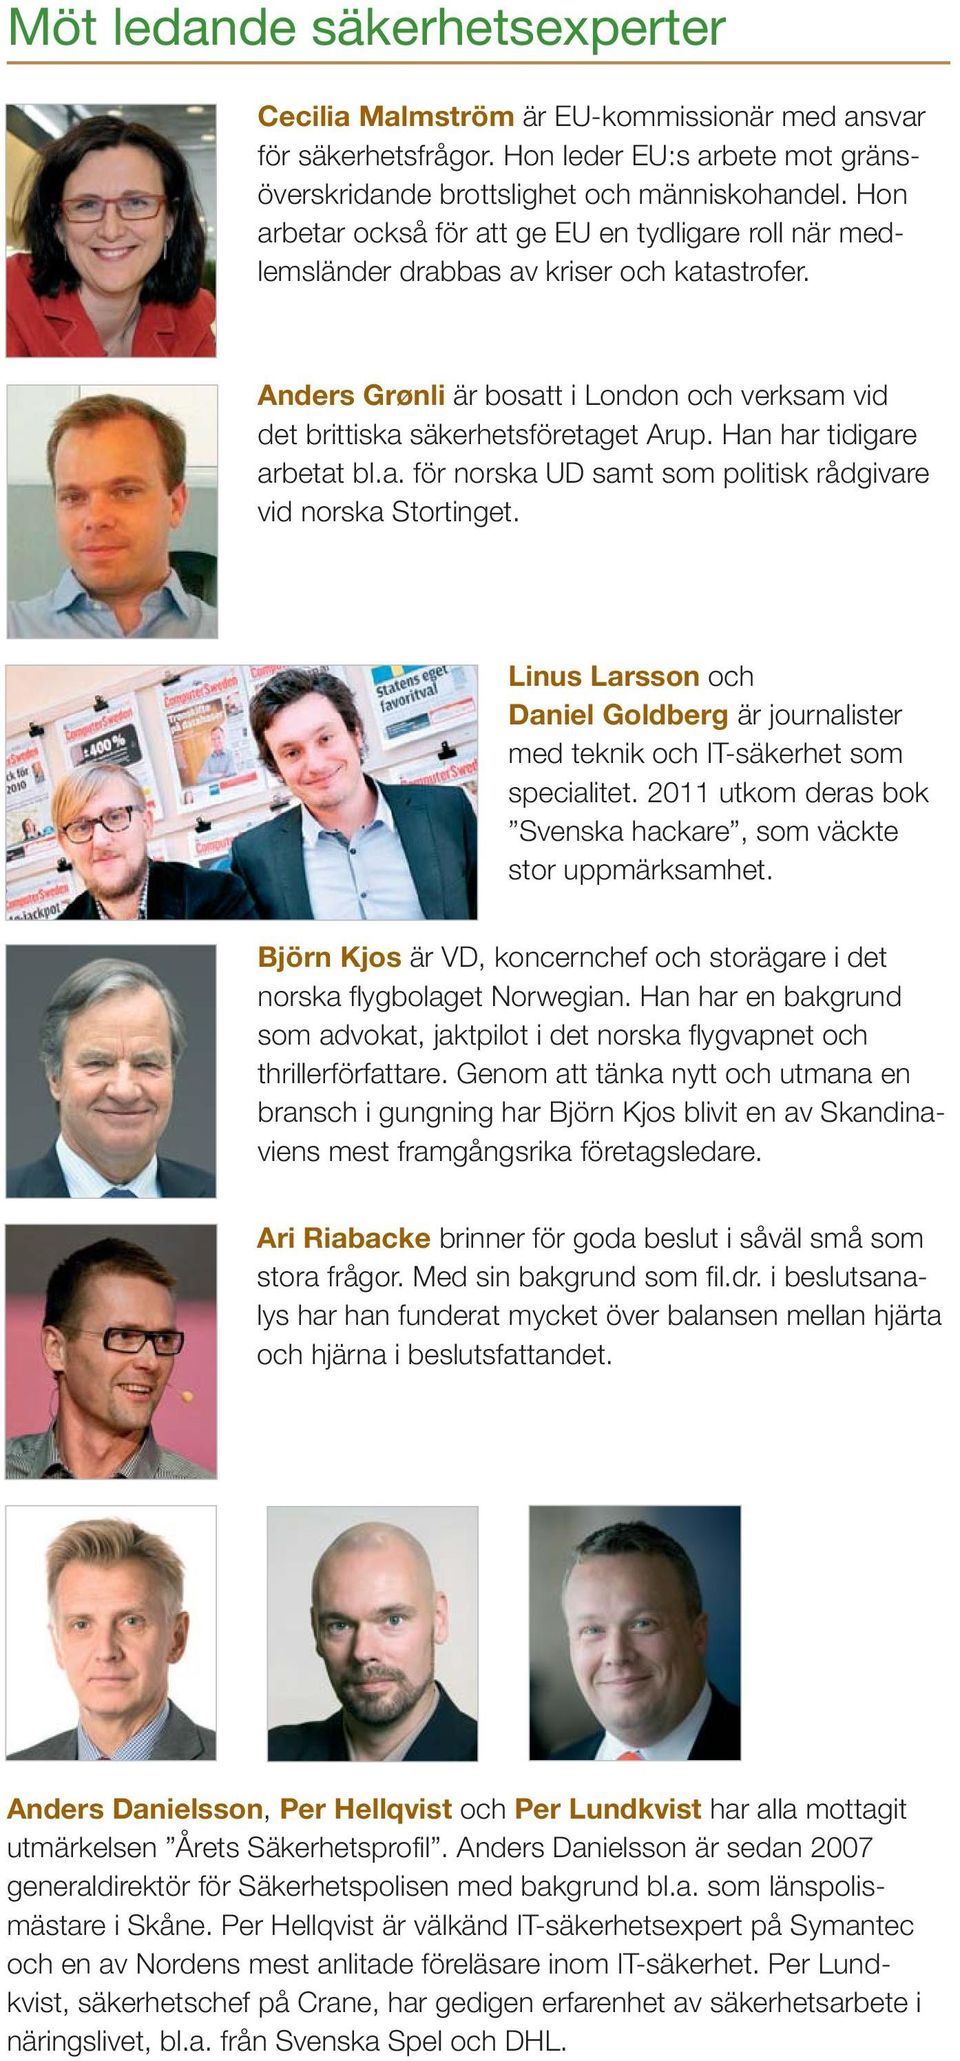 Han har tidigare arbetat bl.a. för norska UD samt som politisk rådgivare vid norska Stortinget. Linus Larsson och Daniel Goldberg är journalister med teknik och IT-säkerhet som specialitet.